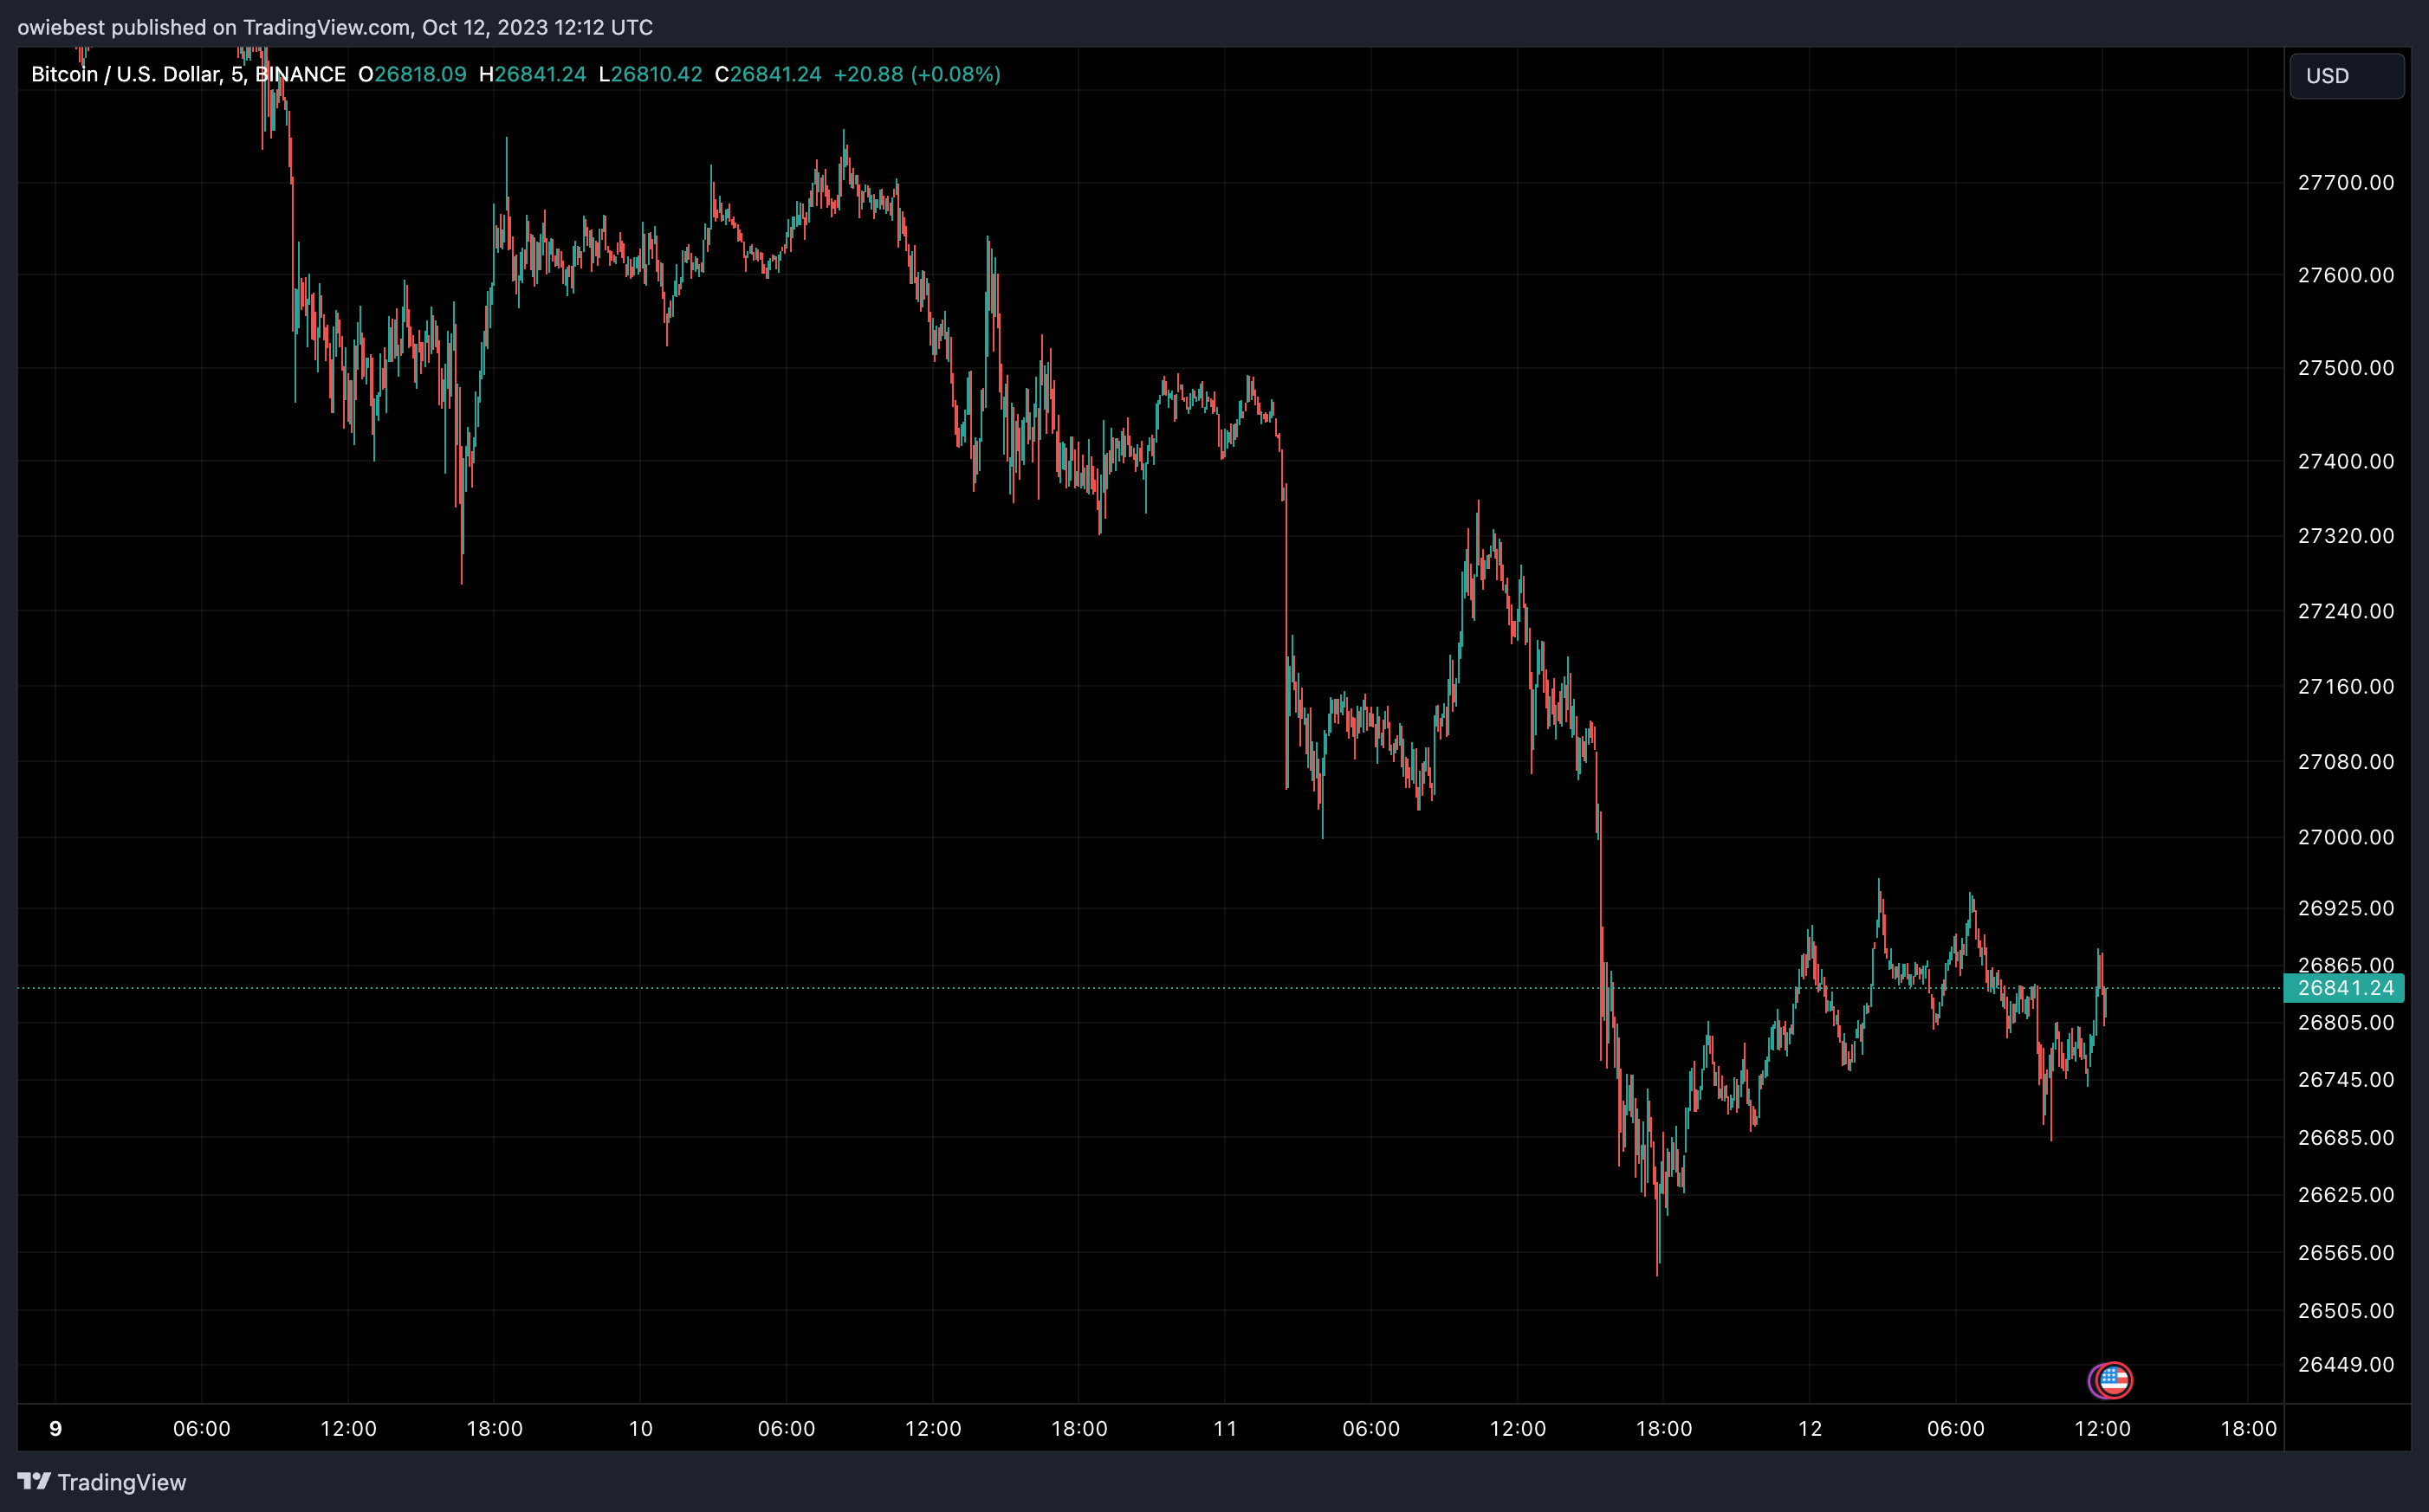 График цен на биткоин от Tradingview.com (хэш-скорость BTC от JP Morgan)